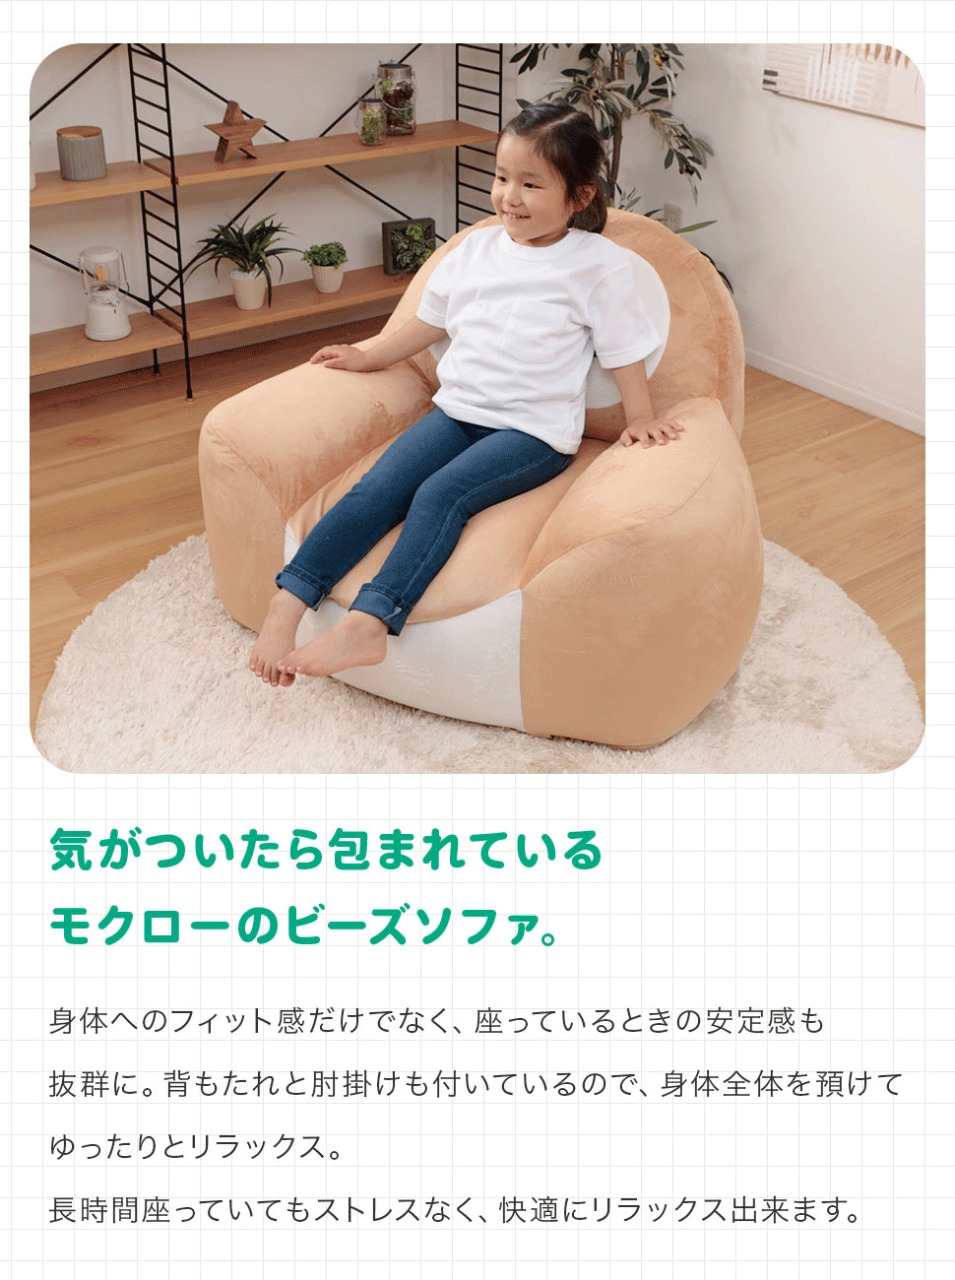 Pokémon: ¡Un sofa inspirado en Rowlet ha sido anunciado en Japón! 6